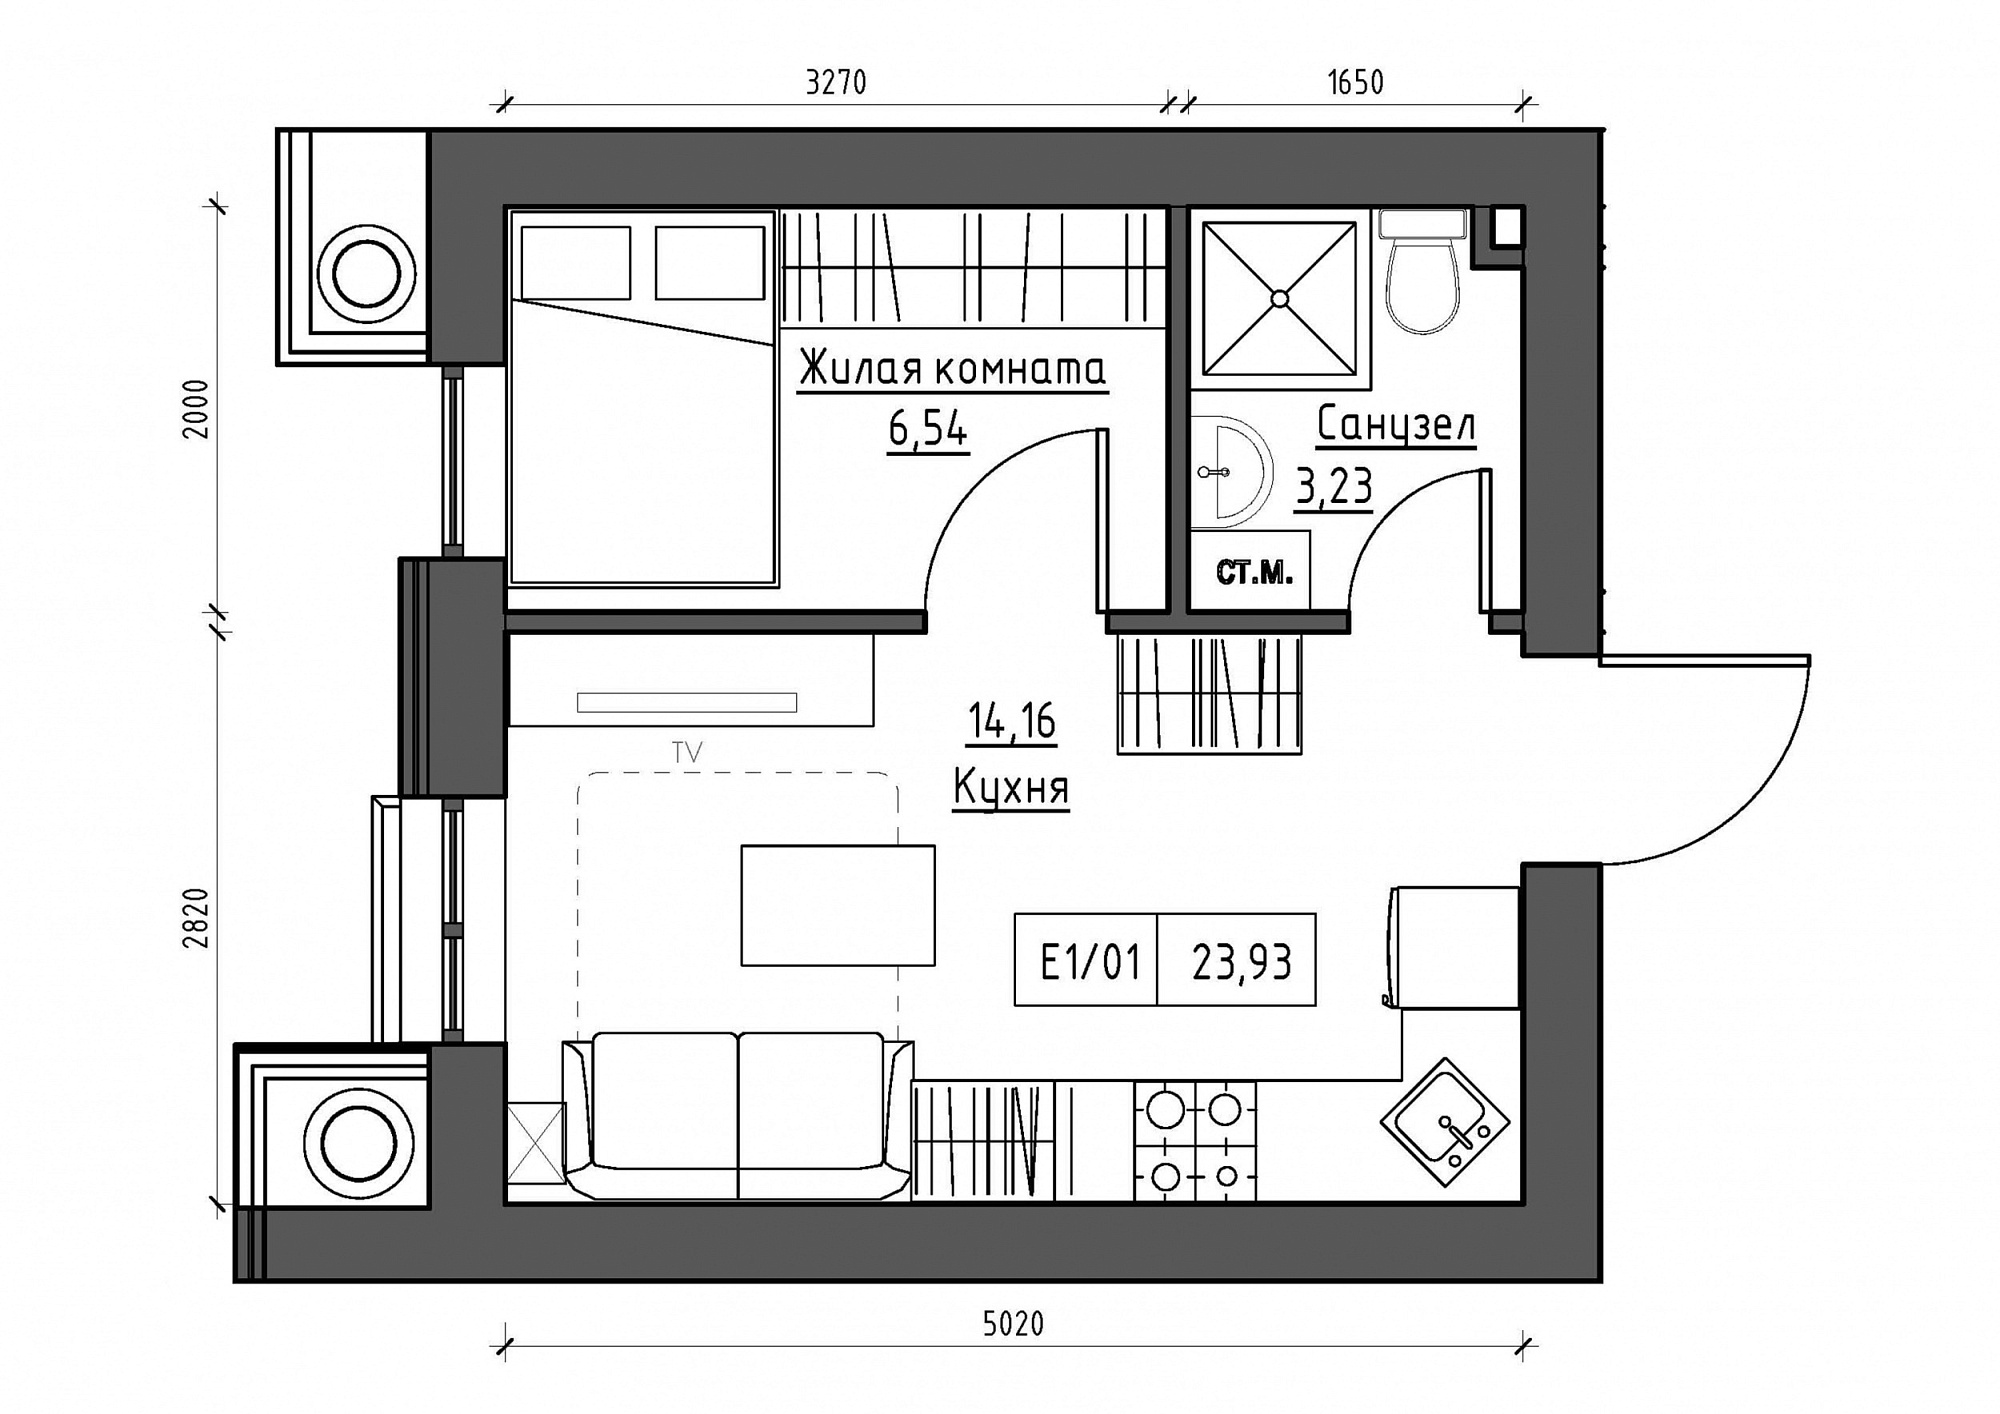 Планування 1-к квартира площею 23.93м2, KS-012-04/0012.